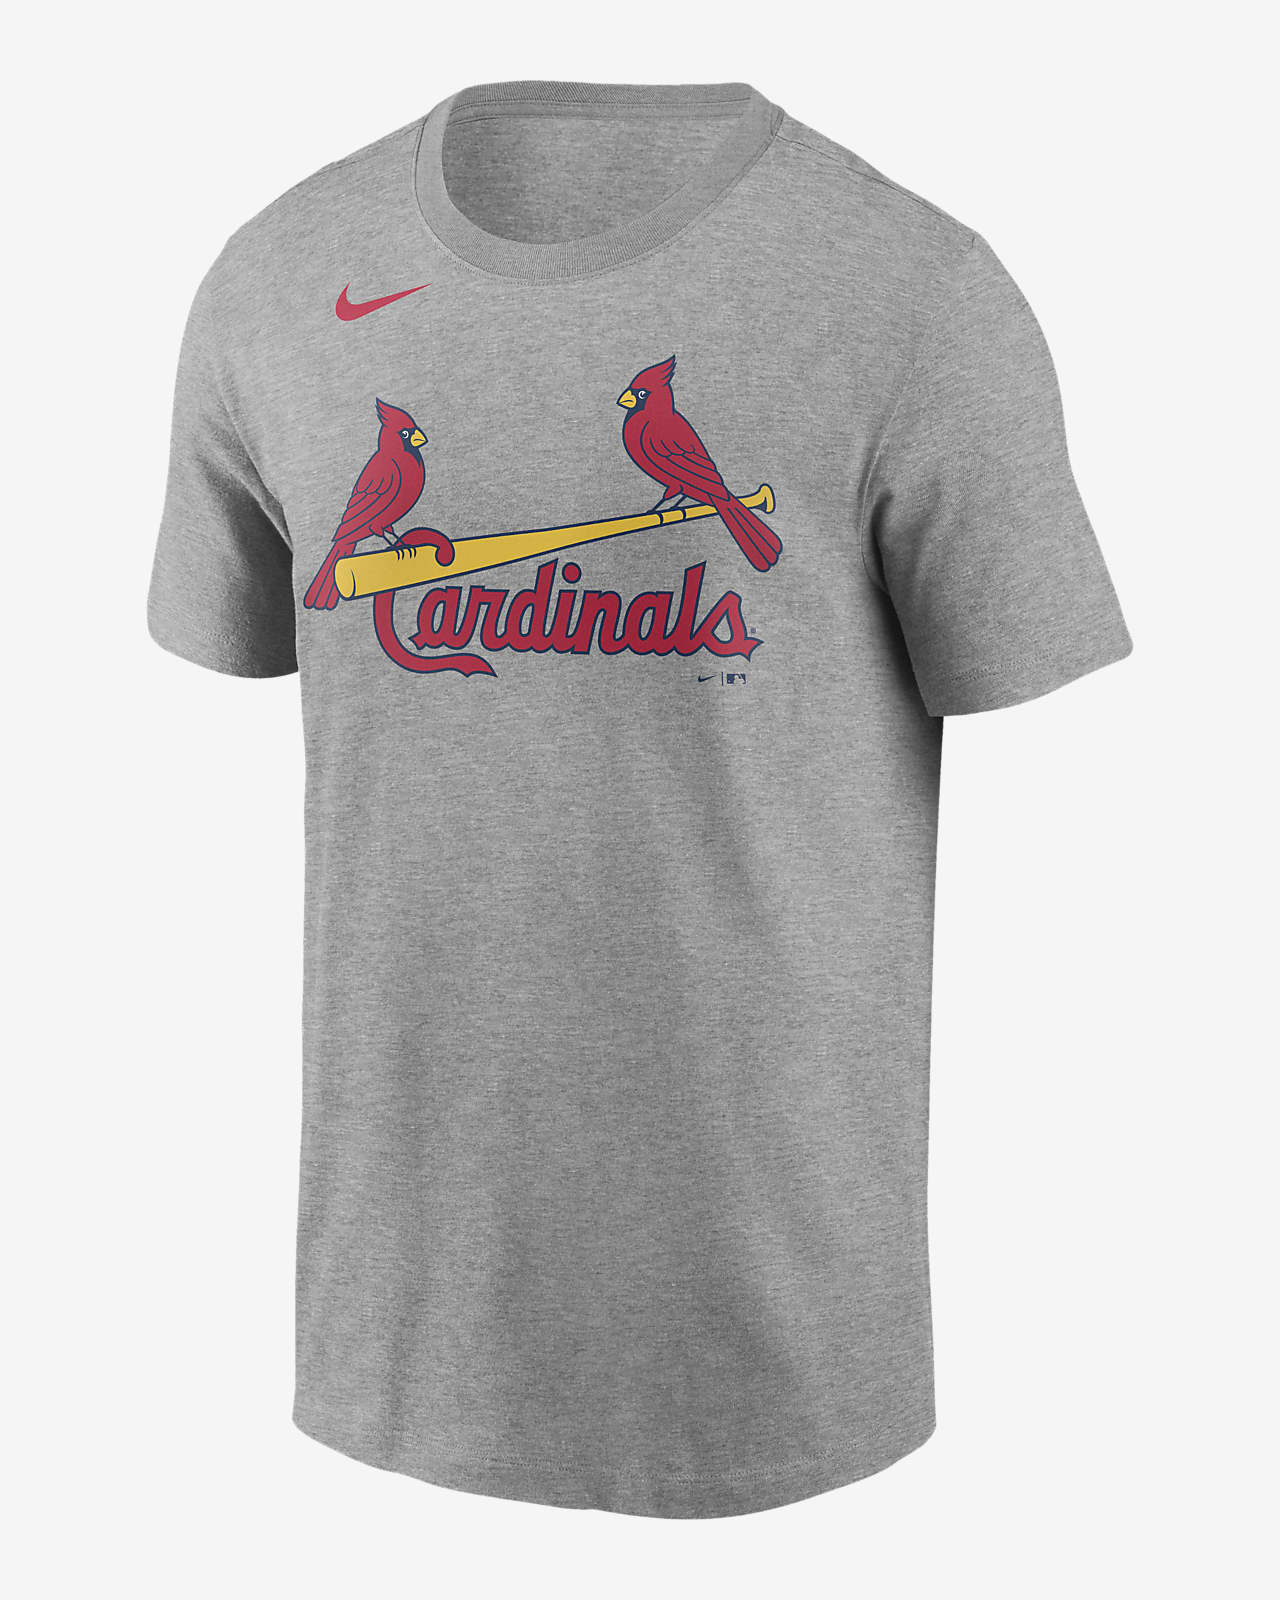 cardinals t shirts